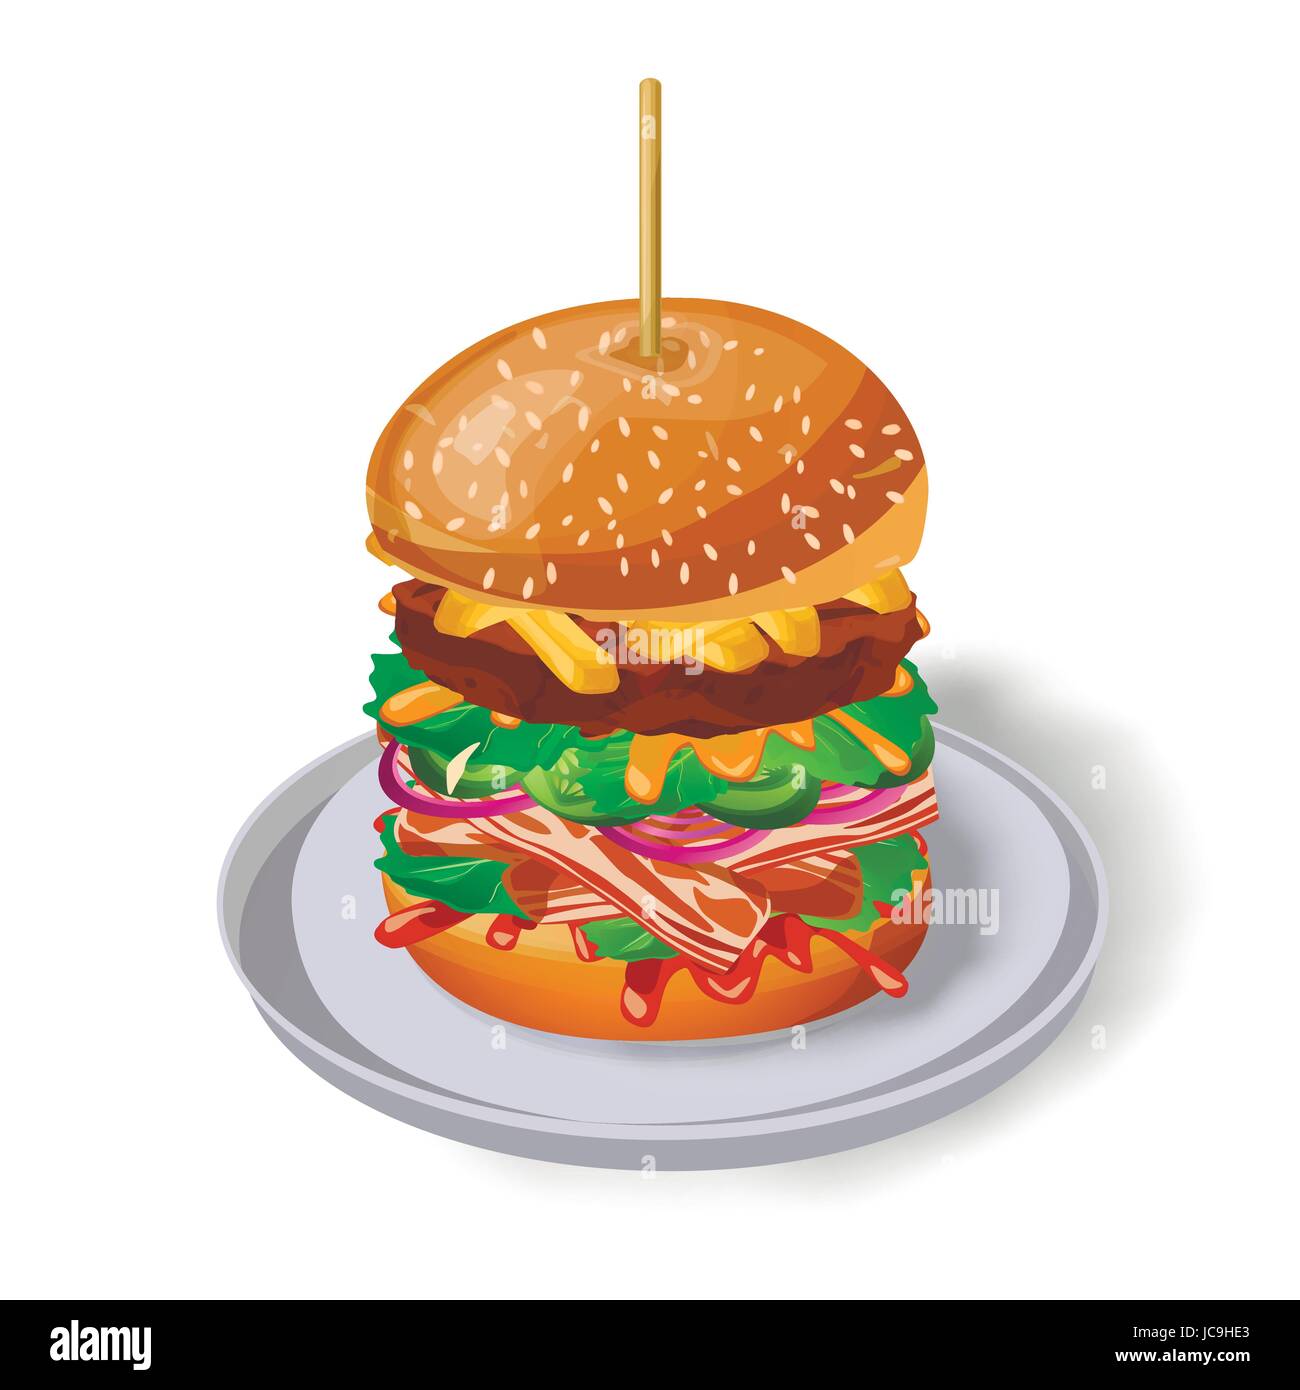 Spiedino di hamburger sulla piastra: fresco gustose grigliate di carni bovine cotoletta bacon lattuga patatine fritte cetriolo cipolla senape salsa di pomodoro sesame bun. Vector vertica Illustrazione Vettoriale